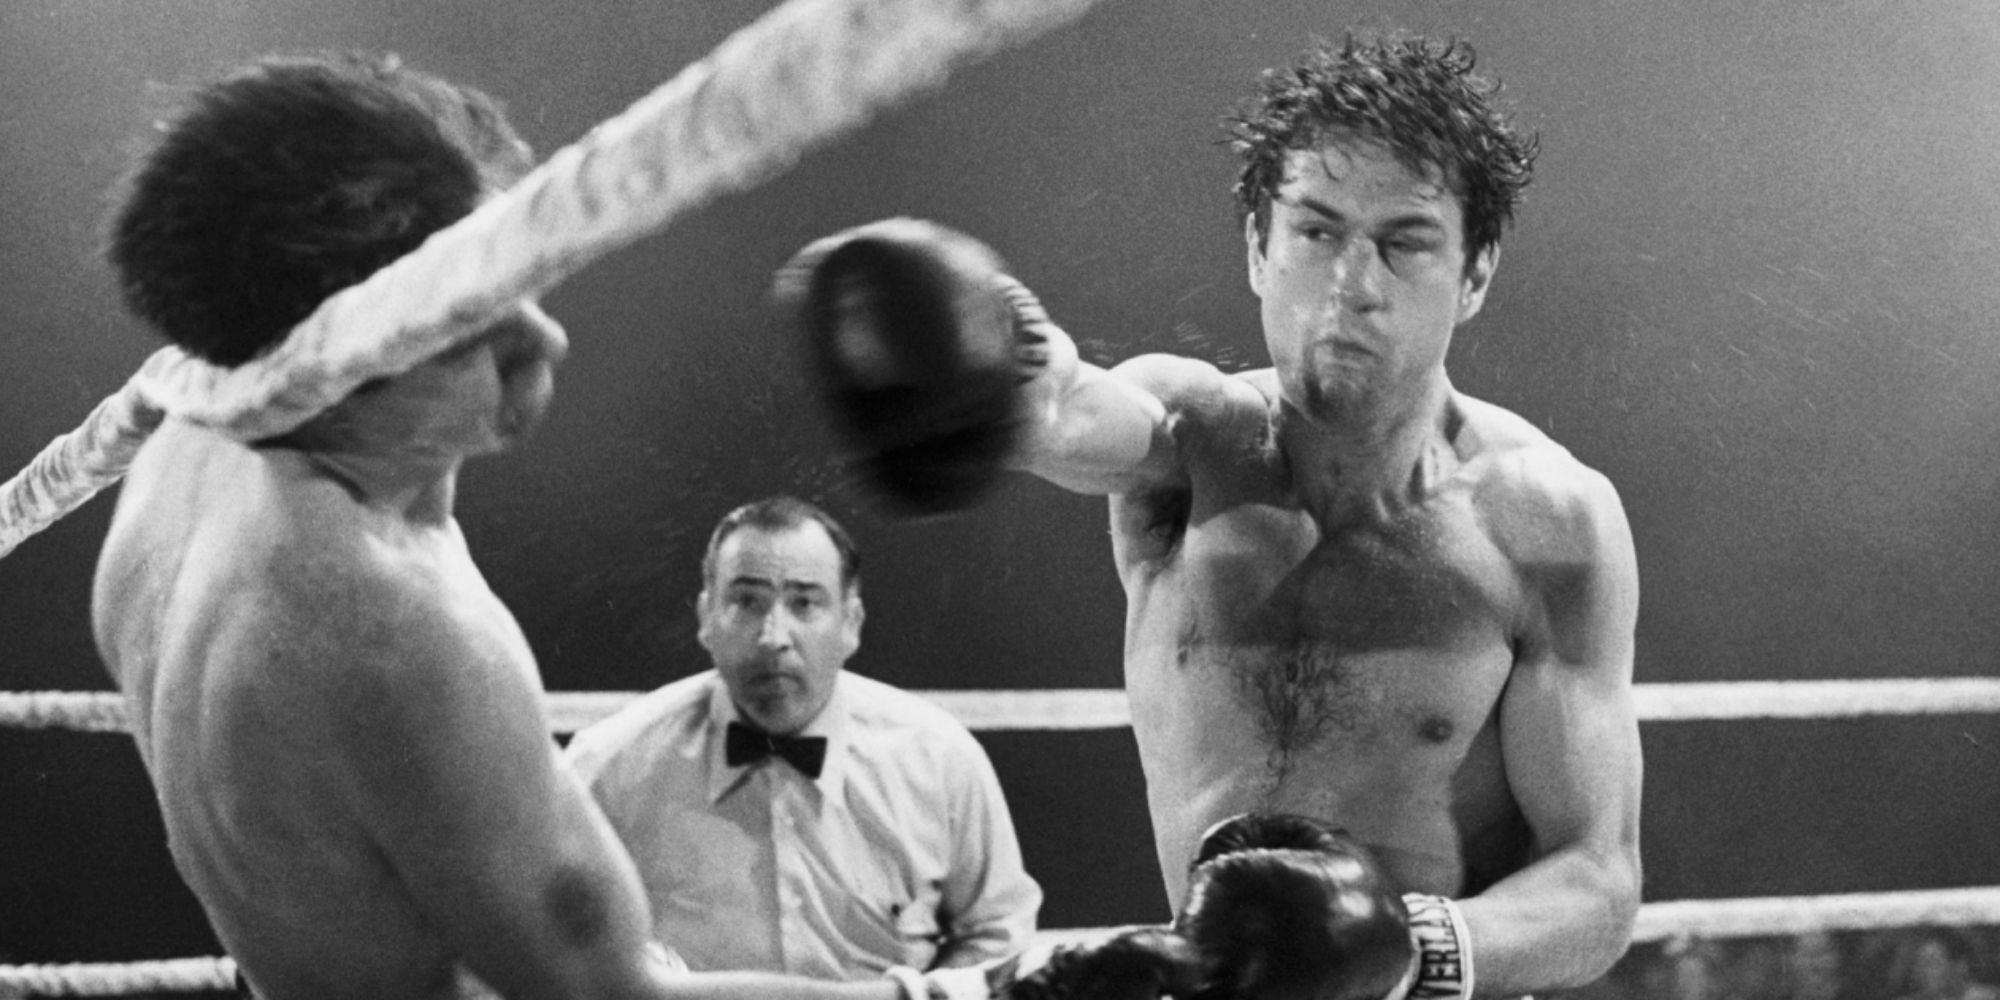 Robert De Niro fighting in the ring in Raging Bull (1980)